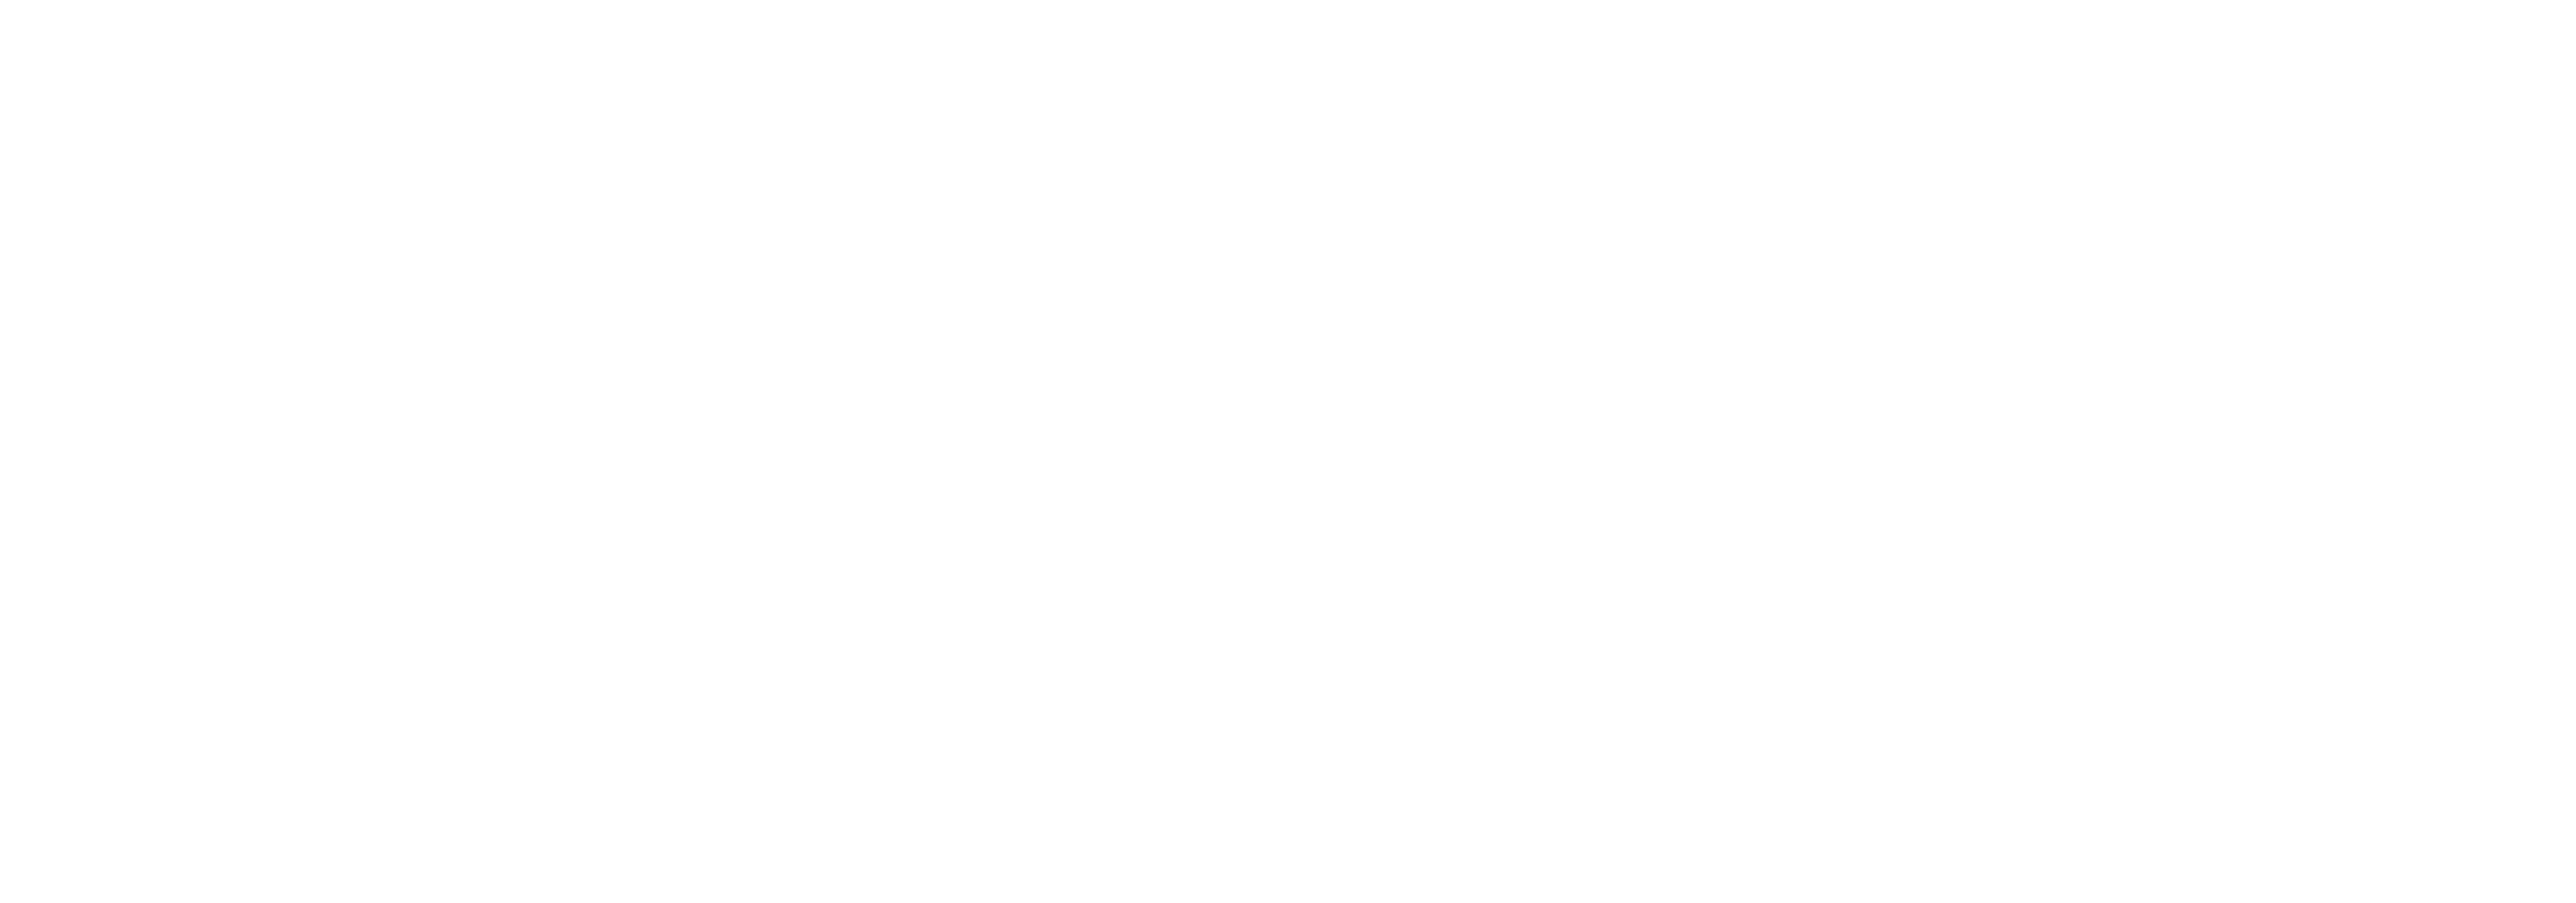 7Luck